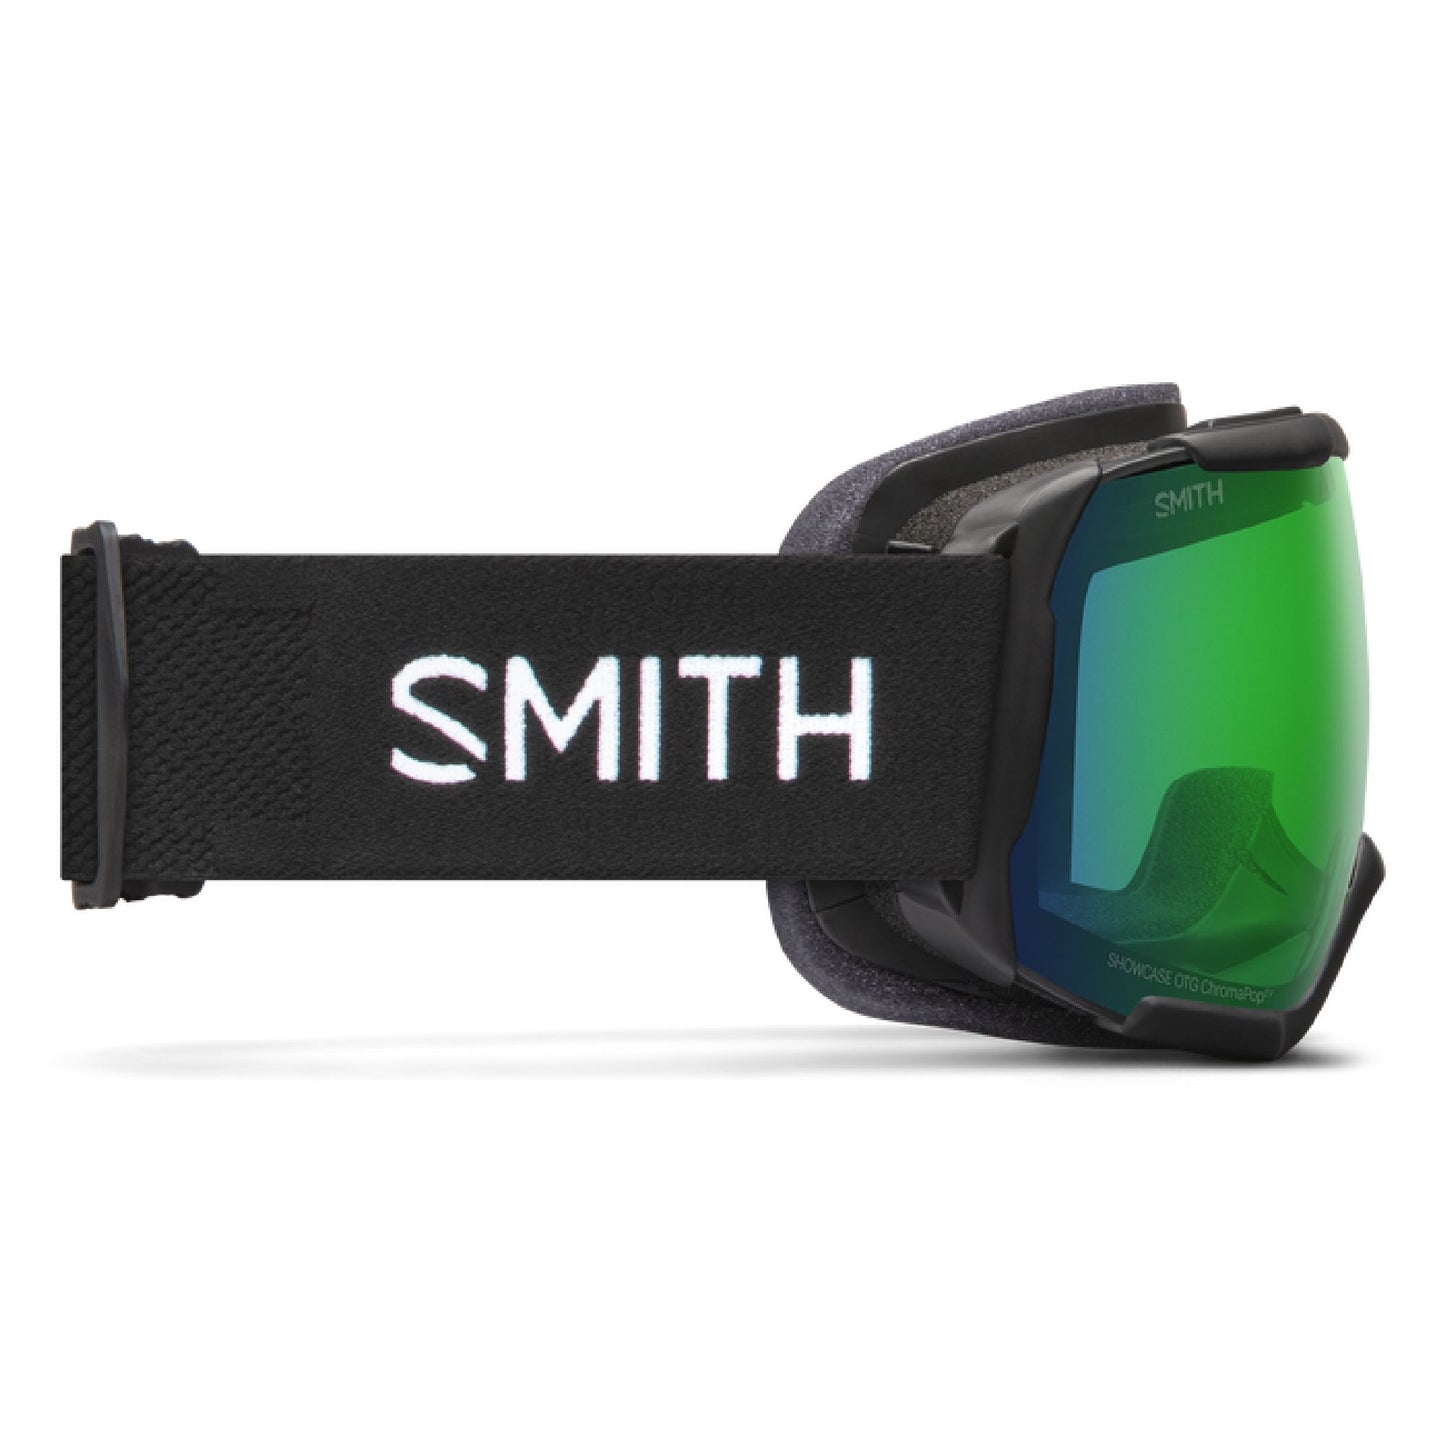 Smith Showcase OTG Snow Goggle Black ChromaPop Everyday Green Mirror Snow Goggles